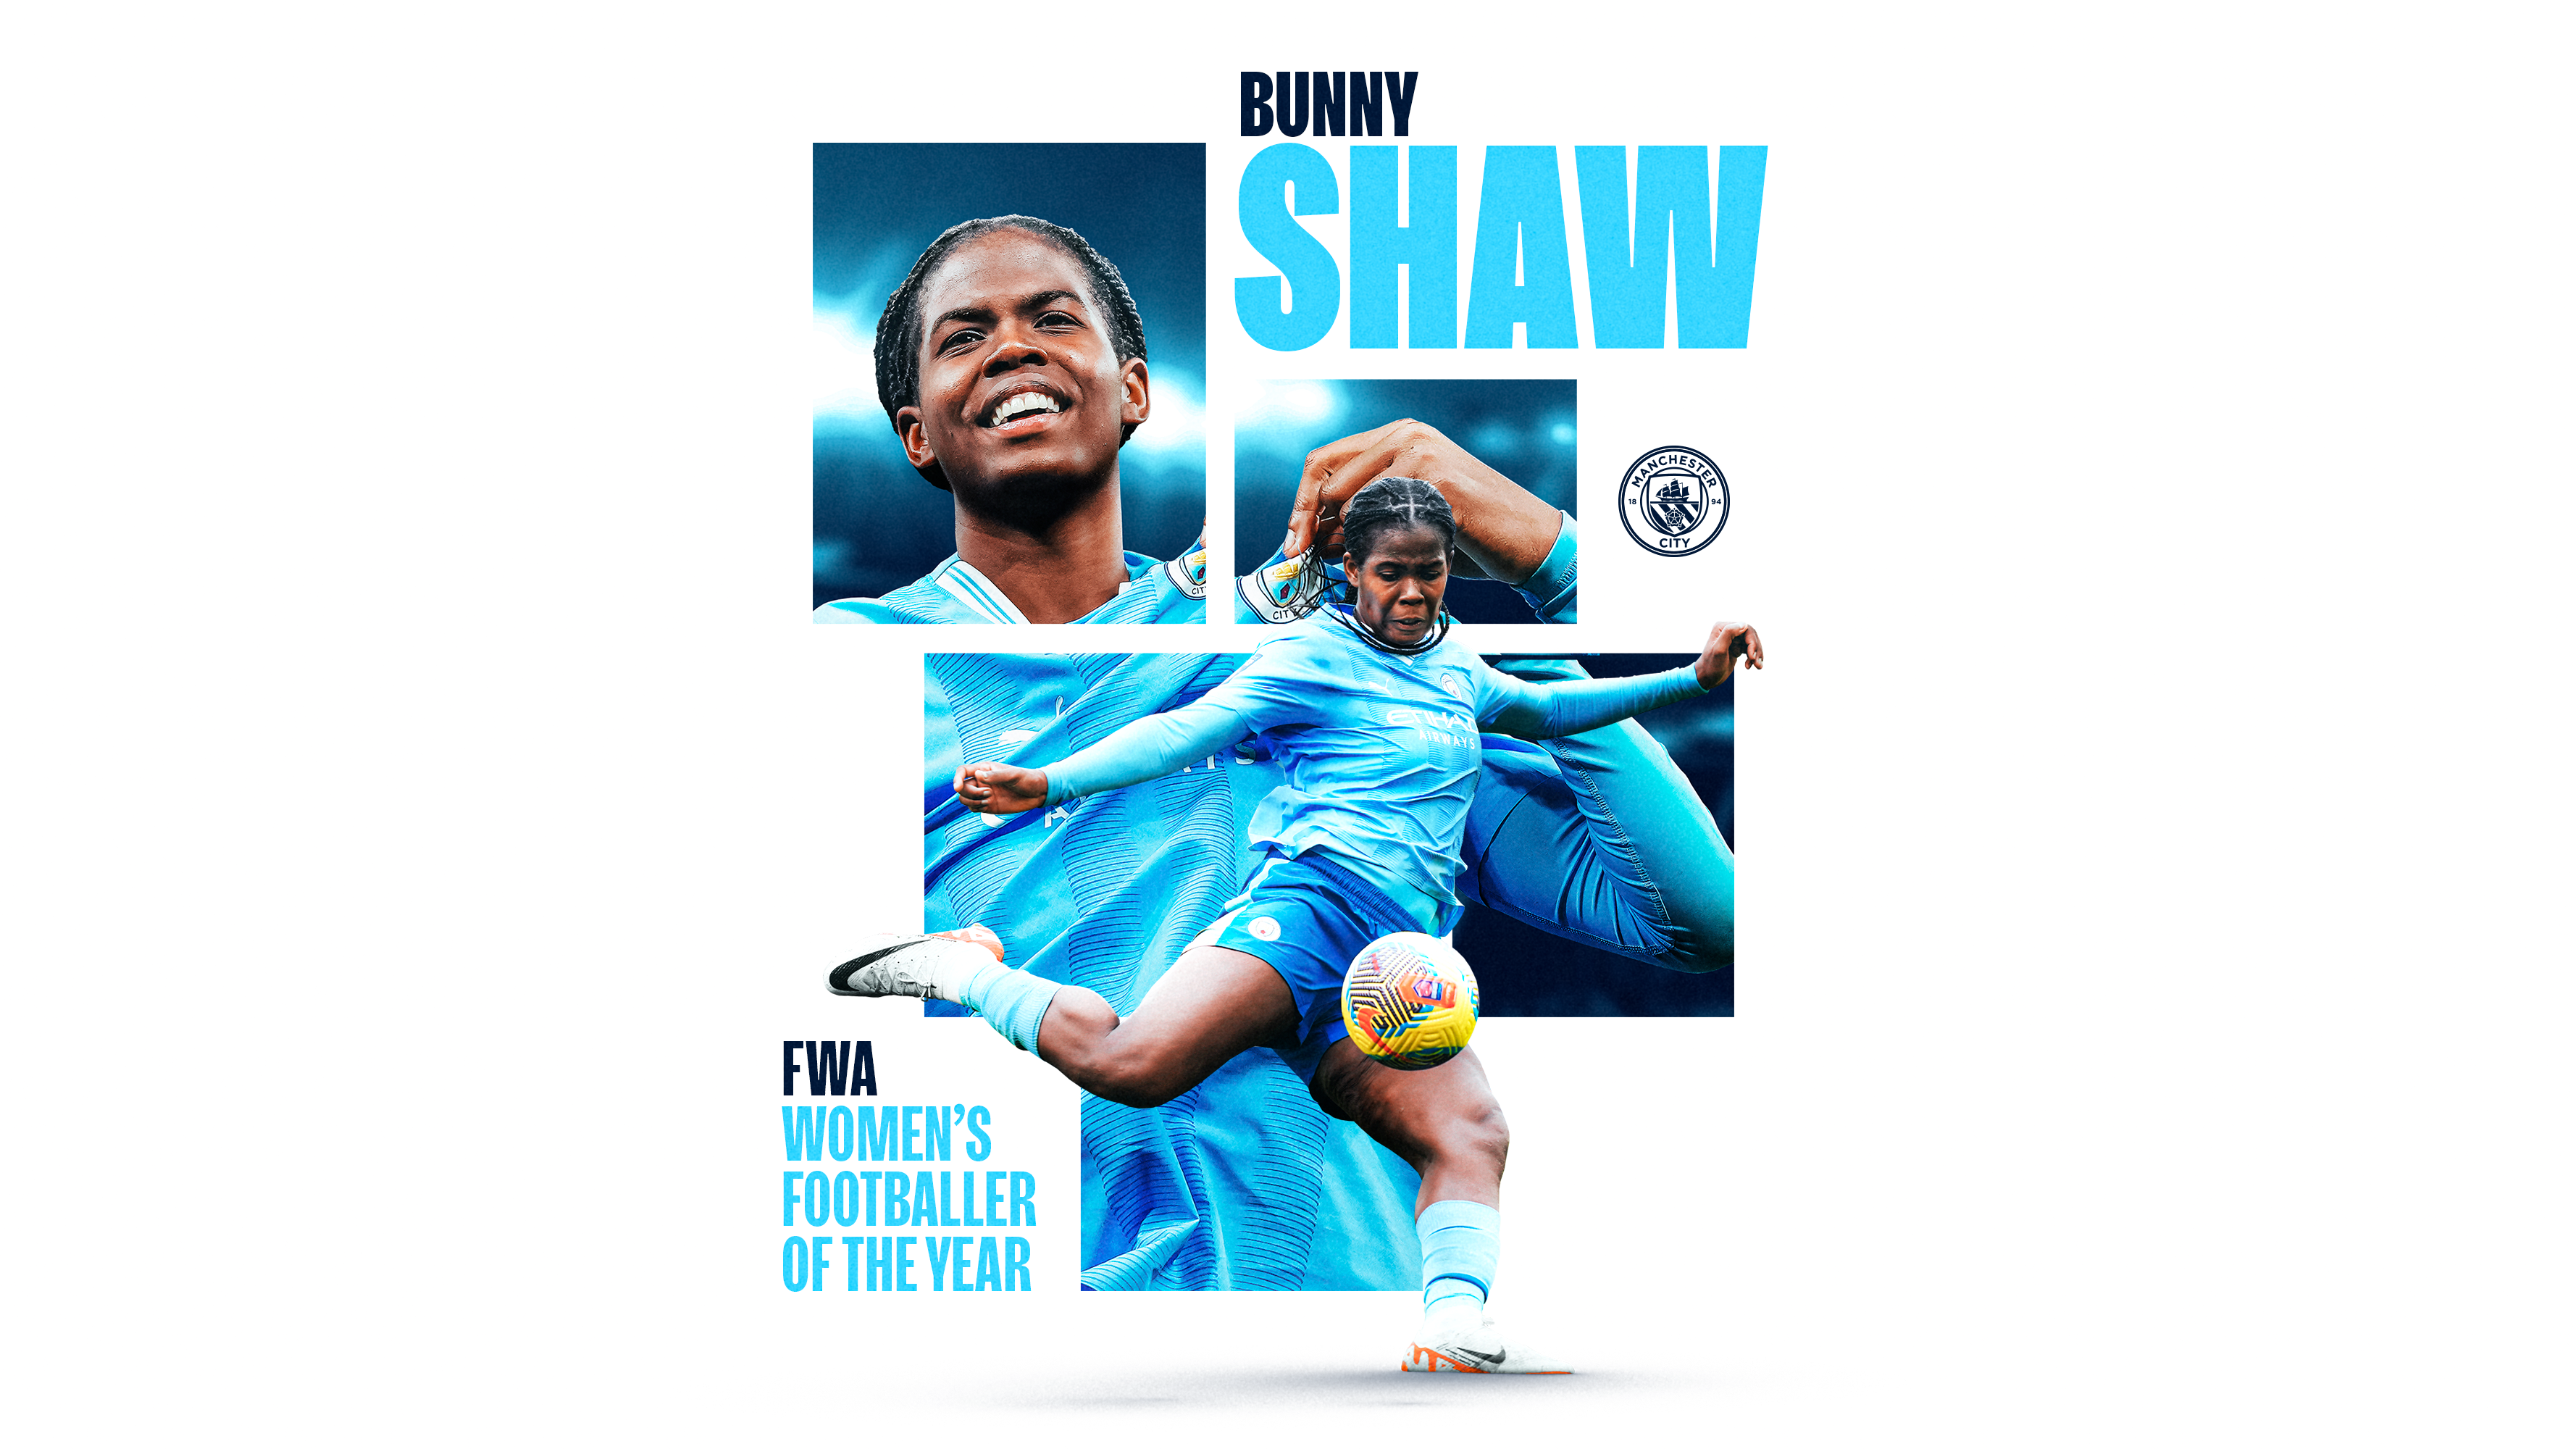 Bunny Shaw Conquista O Prêmio De Jogadora Do Ano Da Fwa 5111